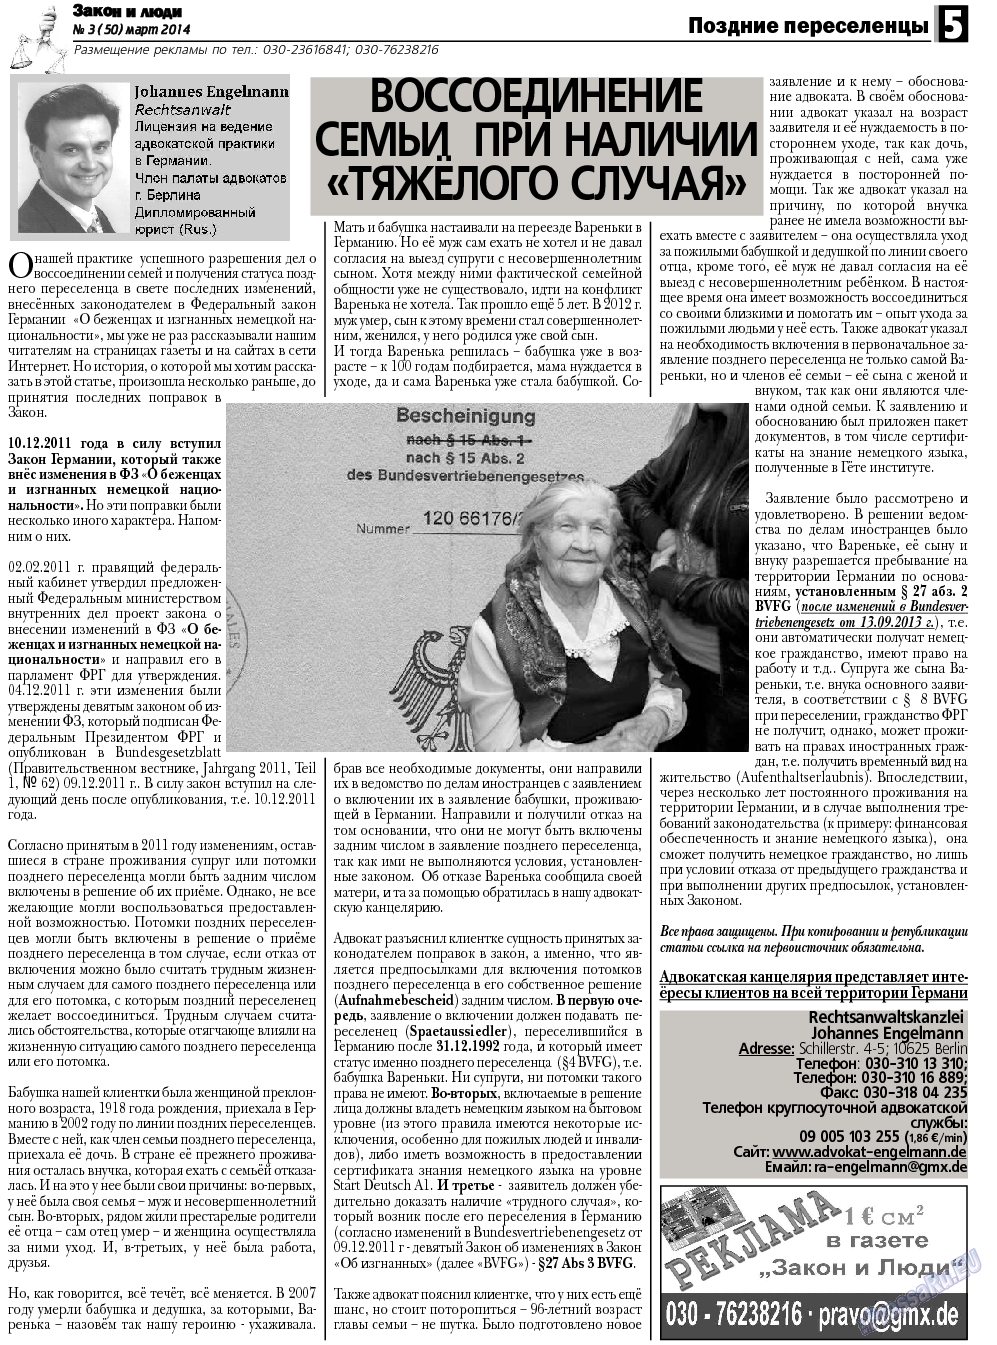 Закон и люди, газета. 2014 №3 стр.5